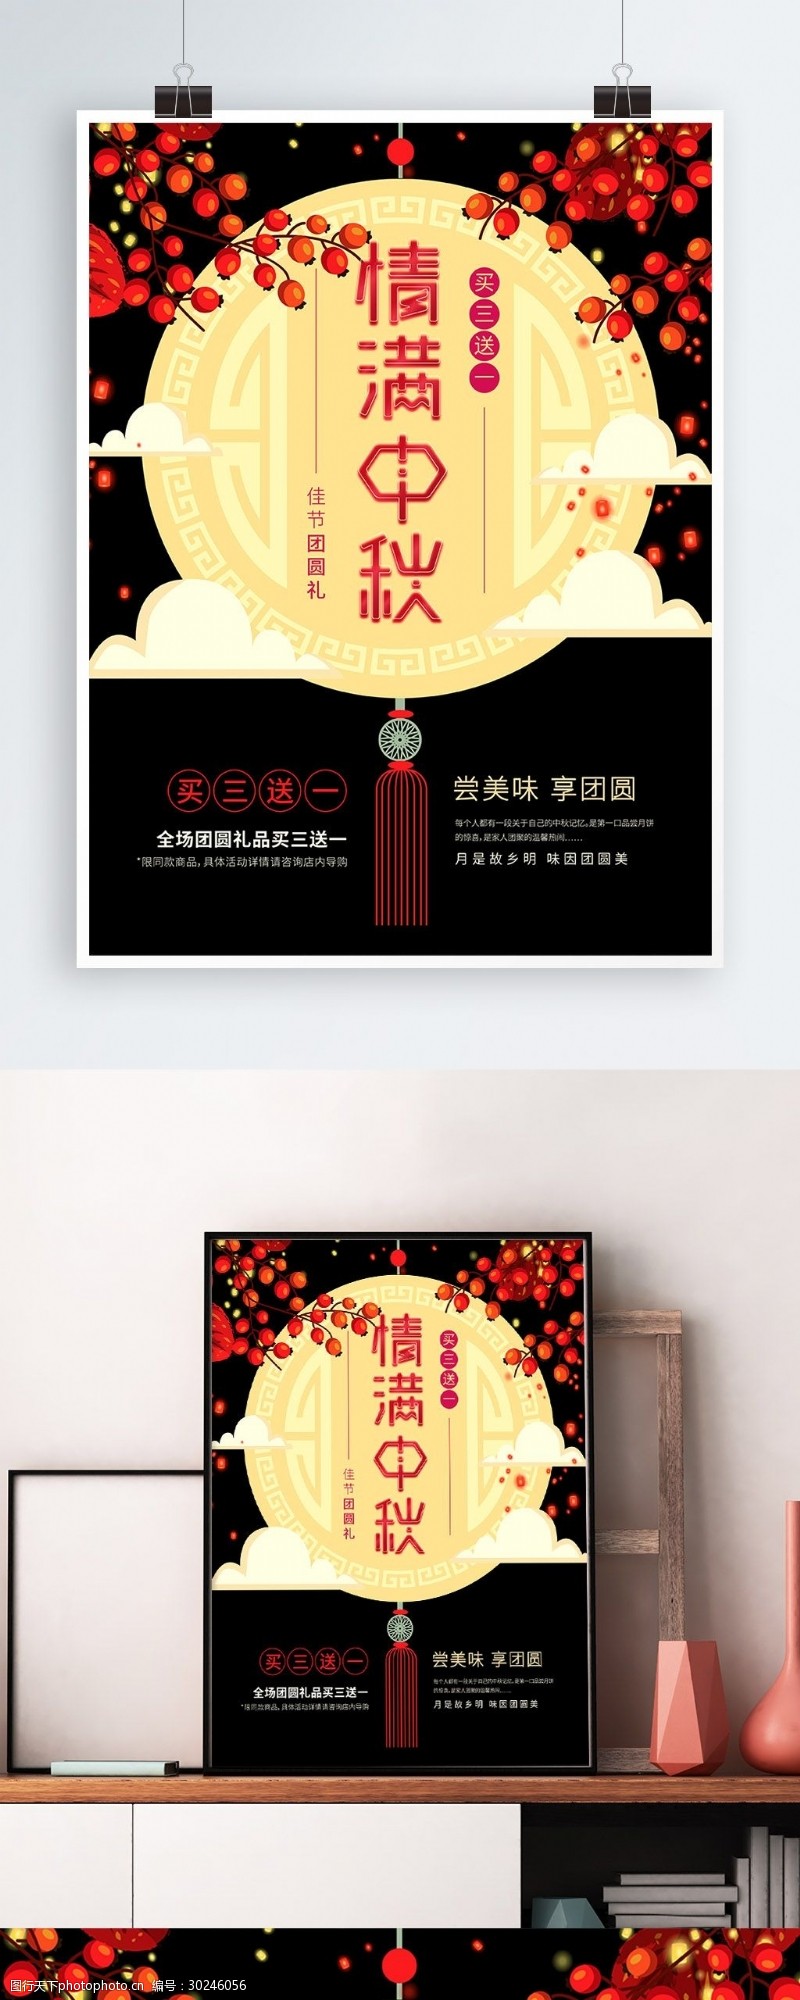 树枝节宣传情满中秋买赠优惠红黑玉坠中秋节活动海报